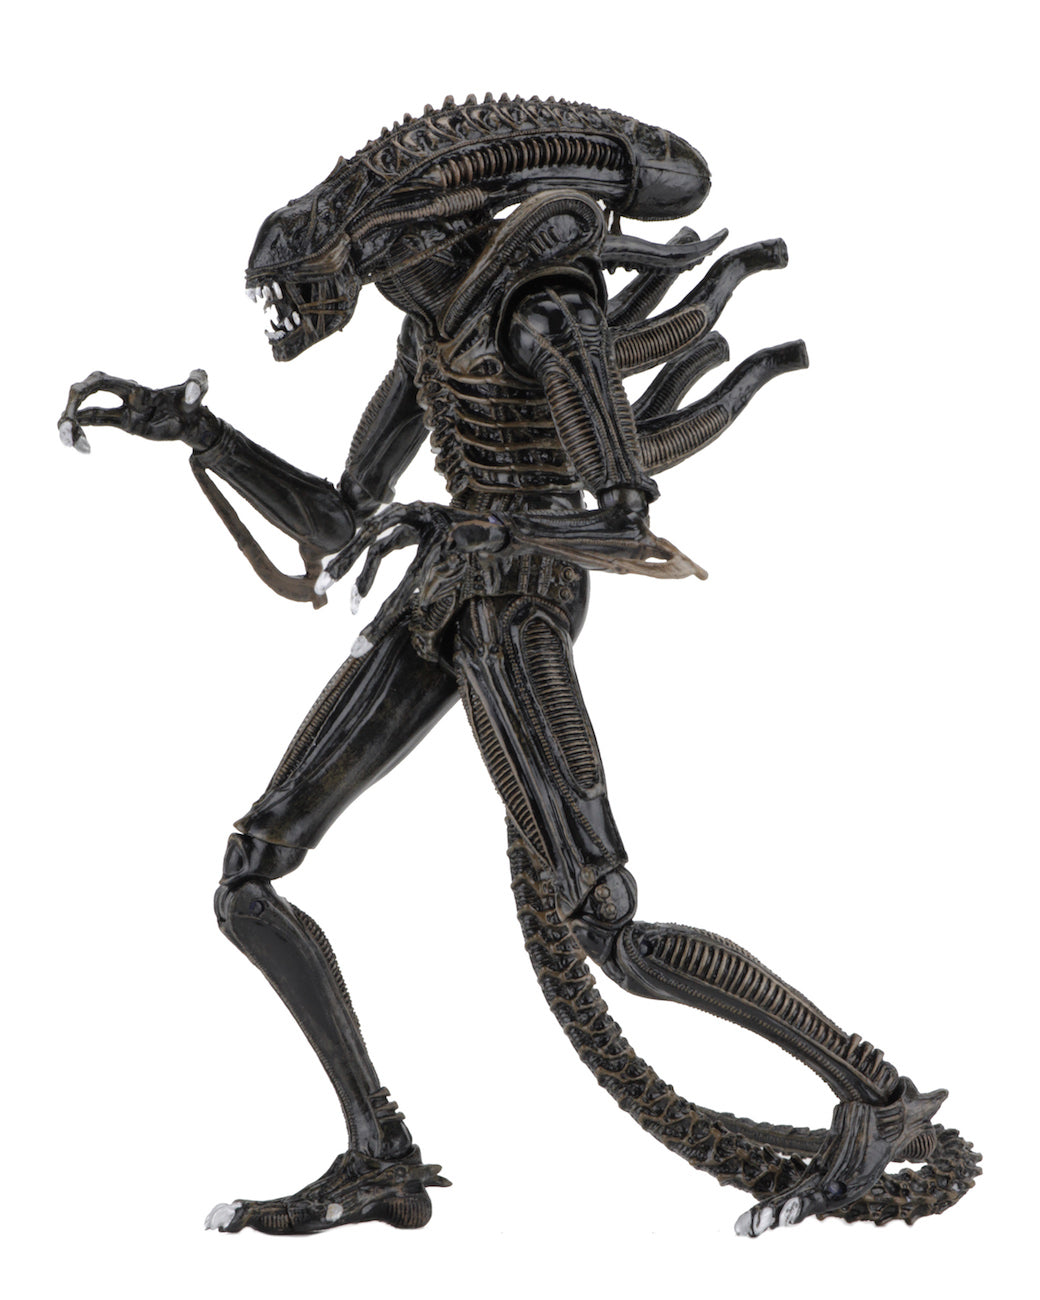 NECA - Aliens - Ultimate Alien Warrior (Brown) 7" Action Figure - Zlc Collectibles